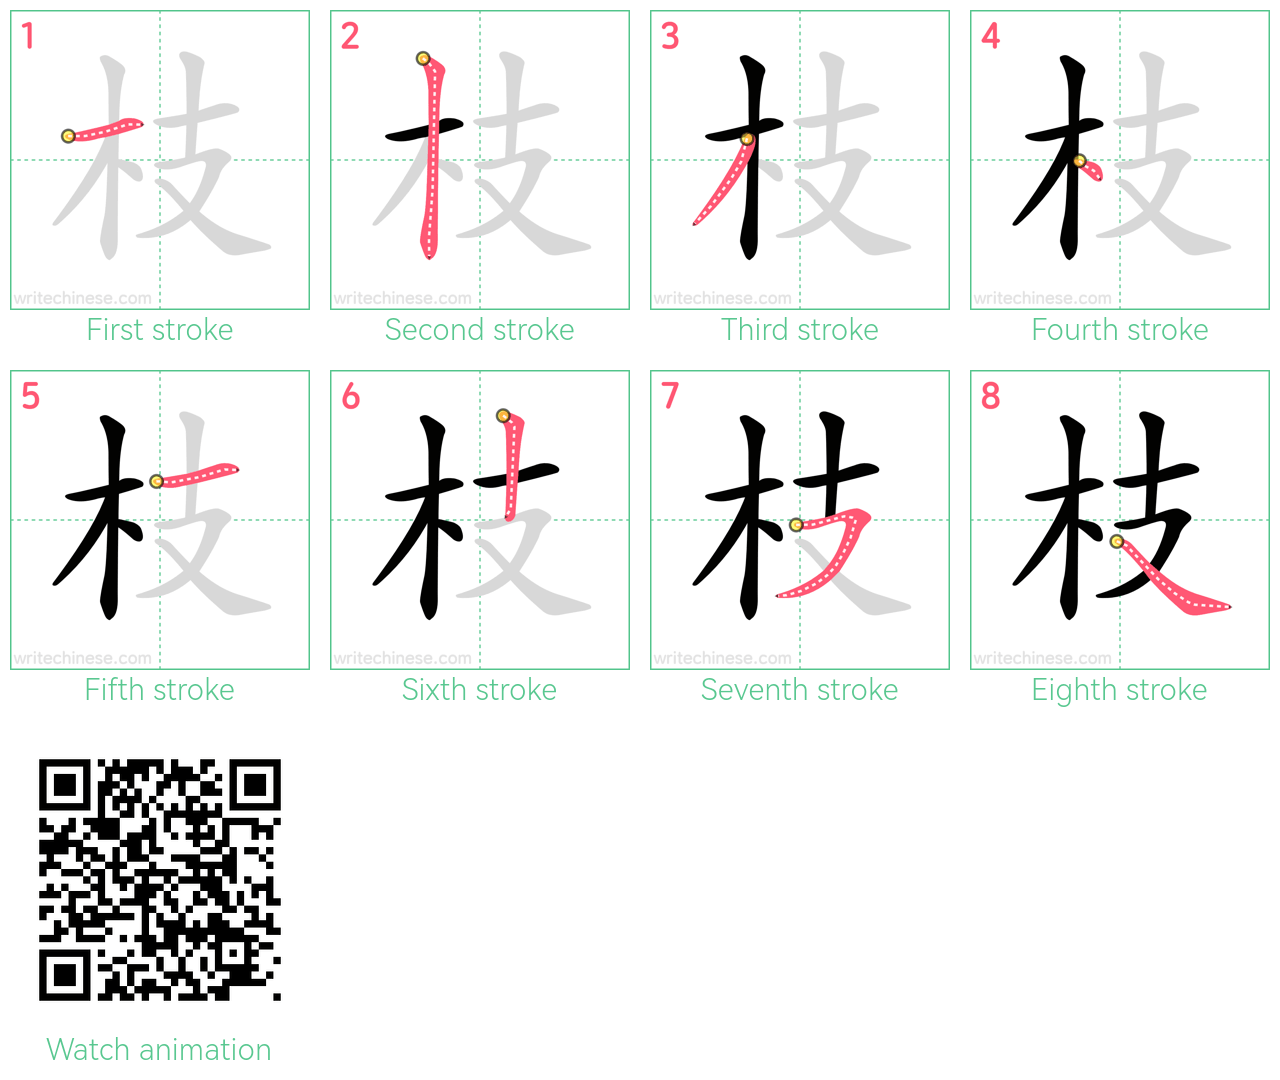 枝 step-by-step stroke order diagrams